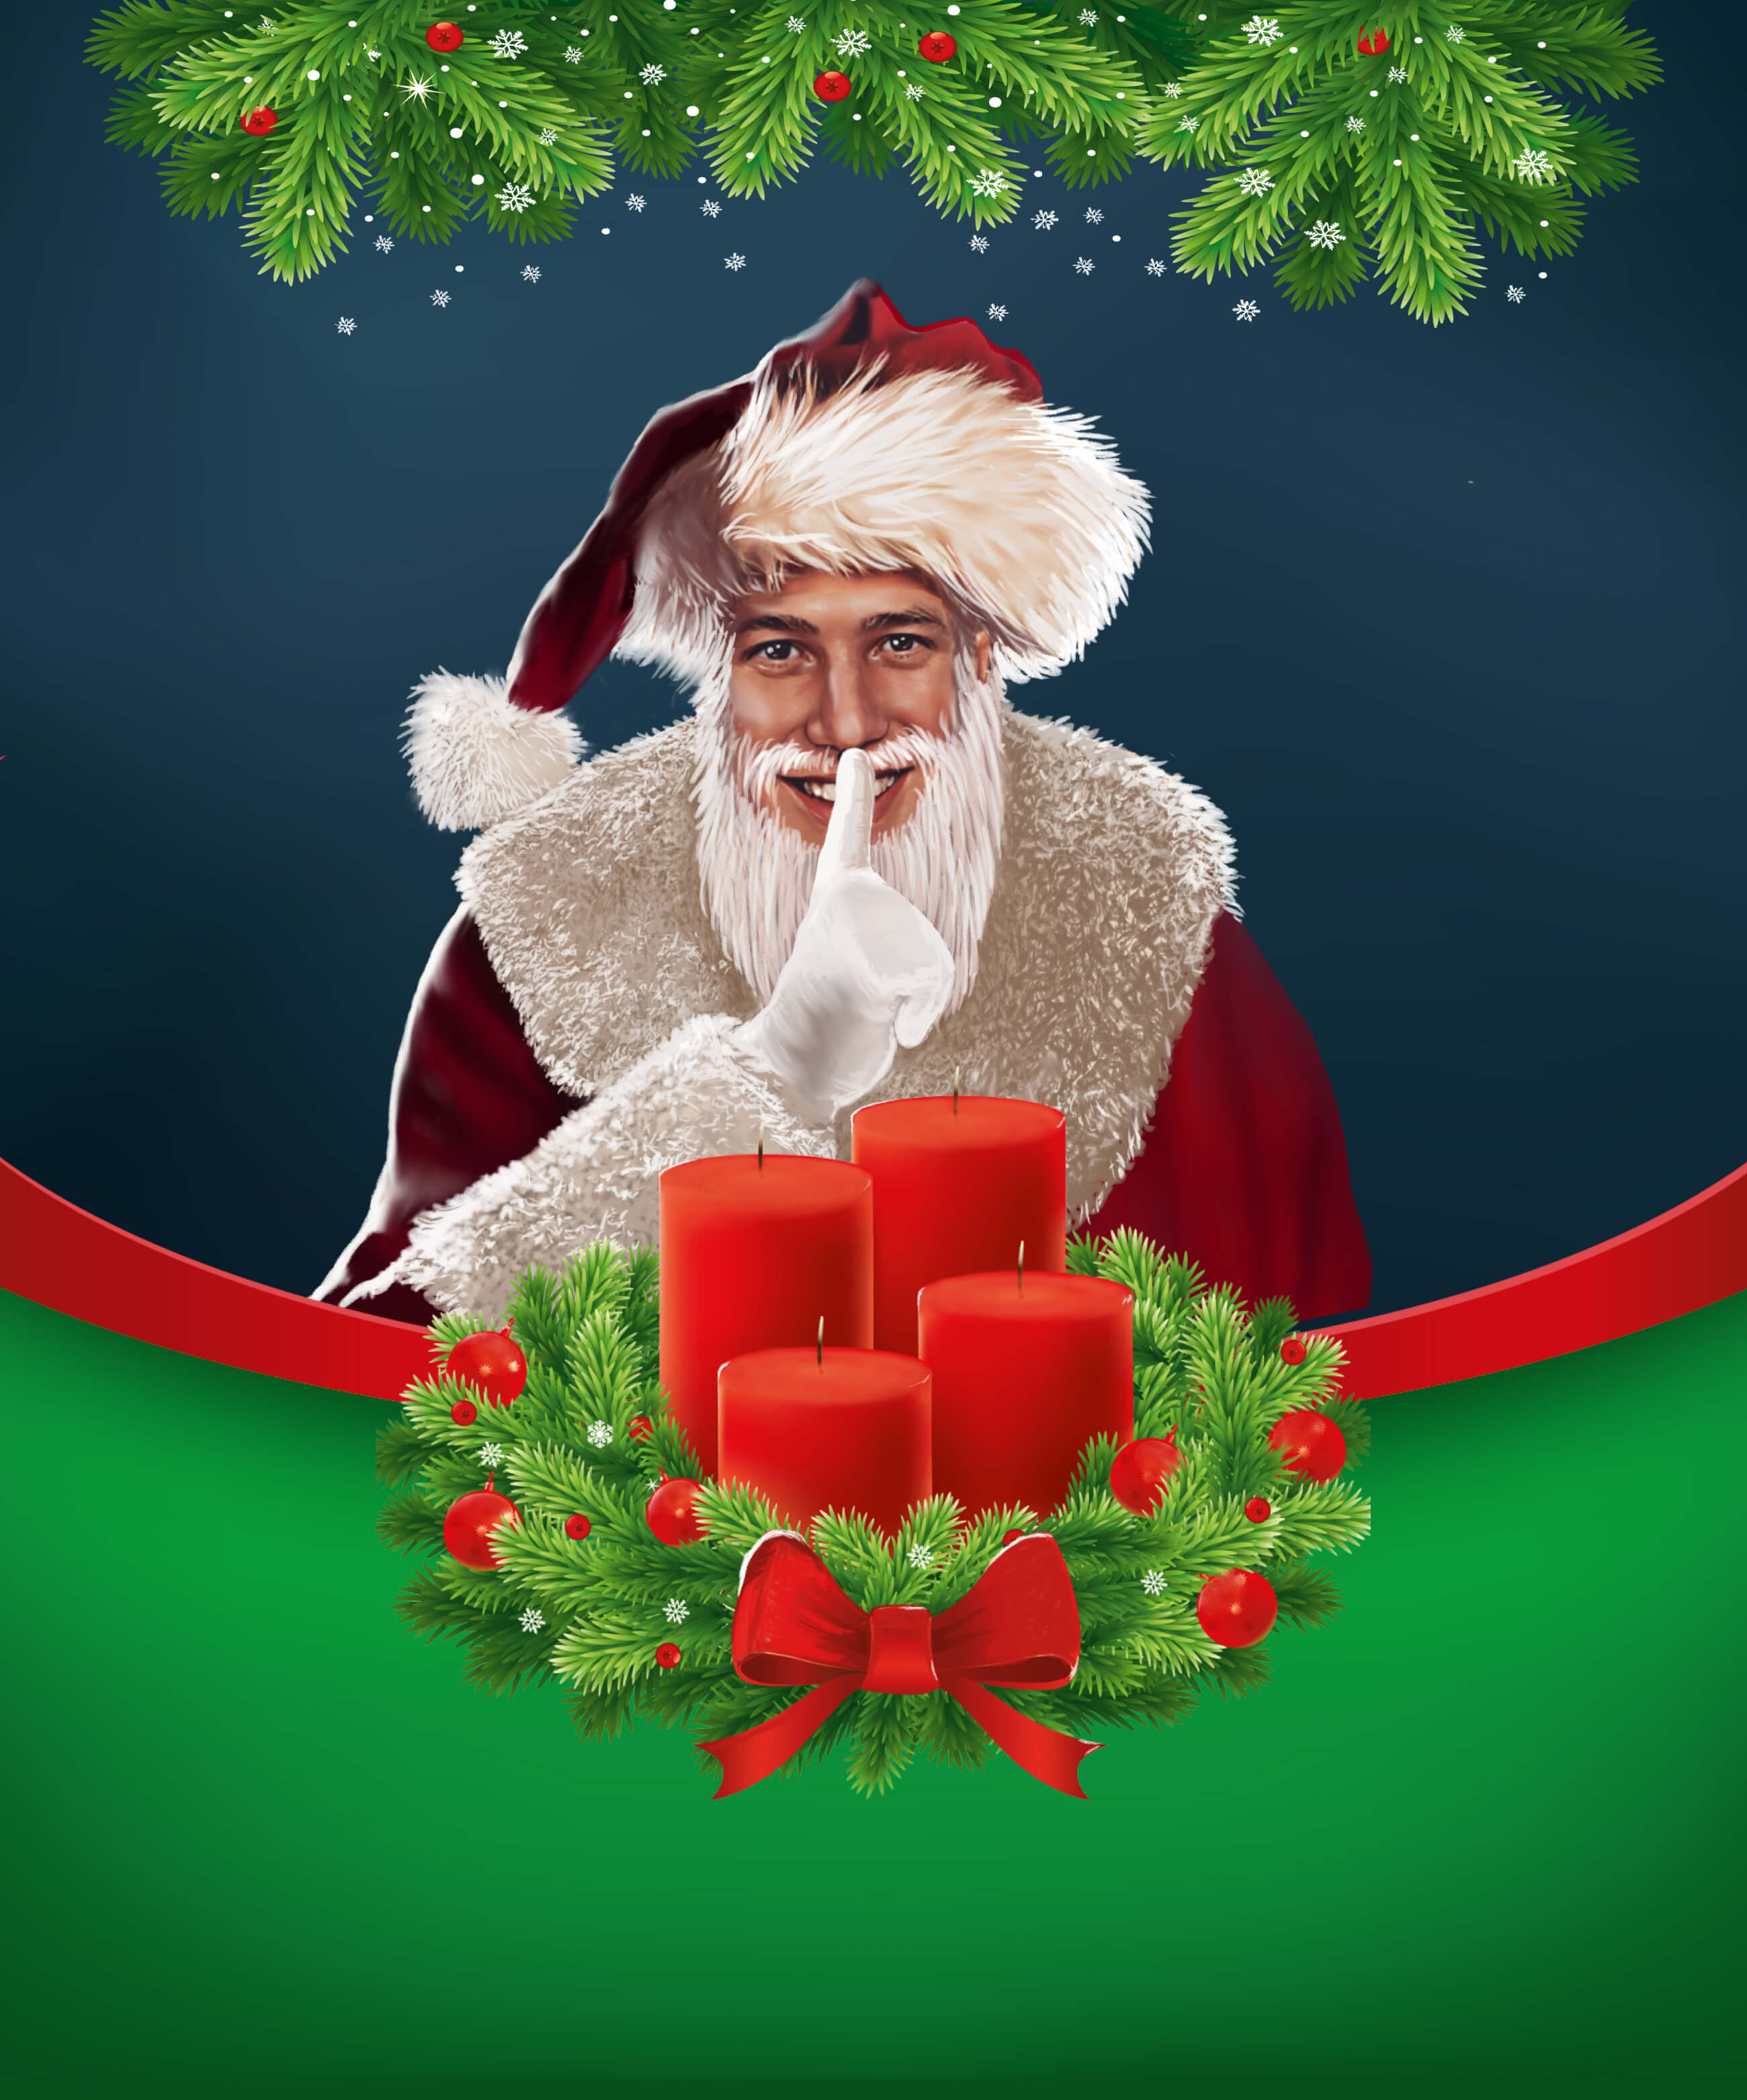 Unser Chefredakteur als Santa verkleidet stimmt auf die leise Jahreszeit ein